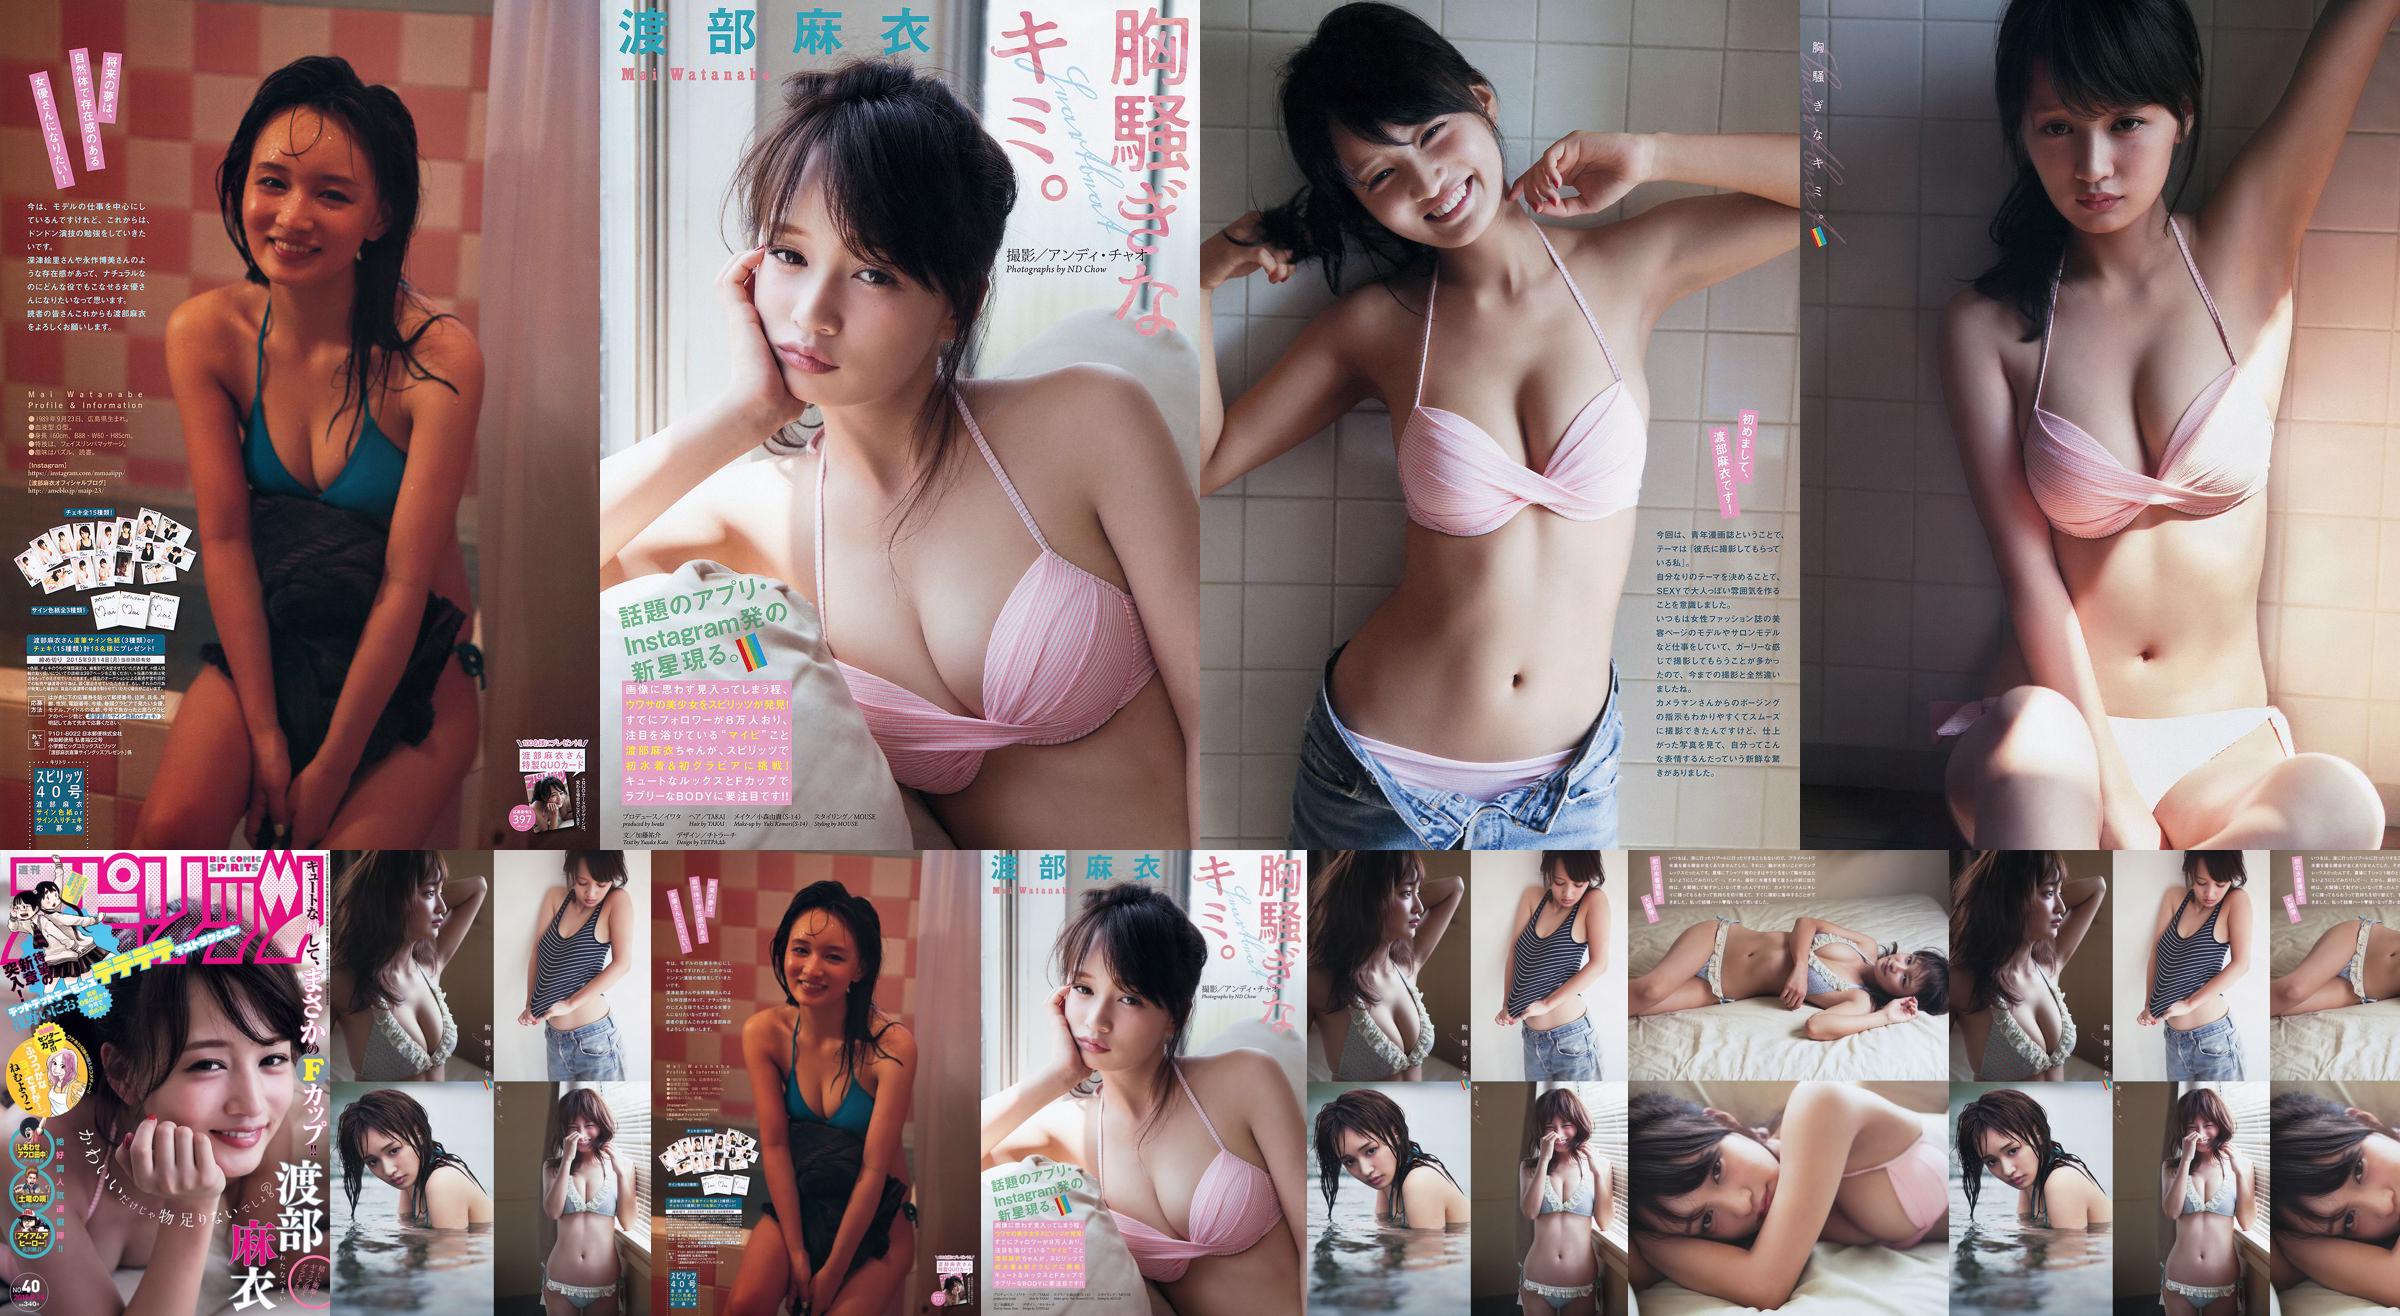 [Weekly Big Comic Spirits] Watanabe Mai 2015 No.40 Photo Magazine No.521e2c Página 1